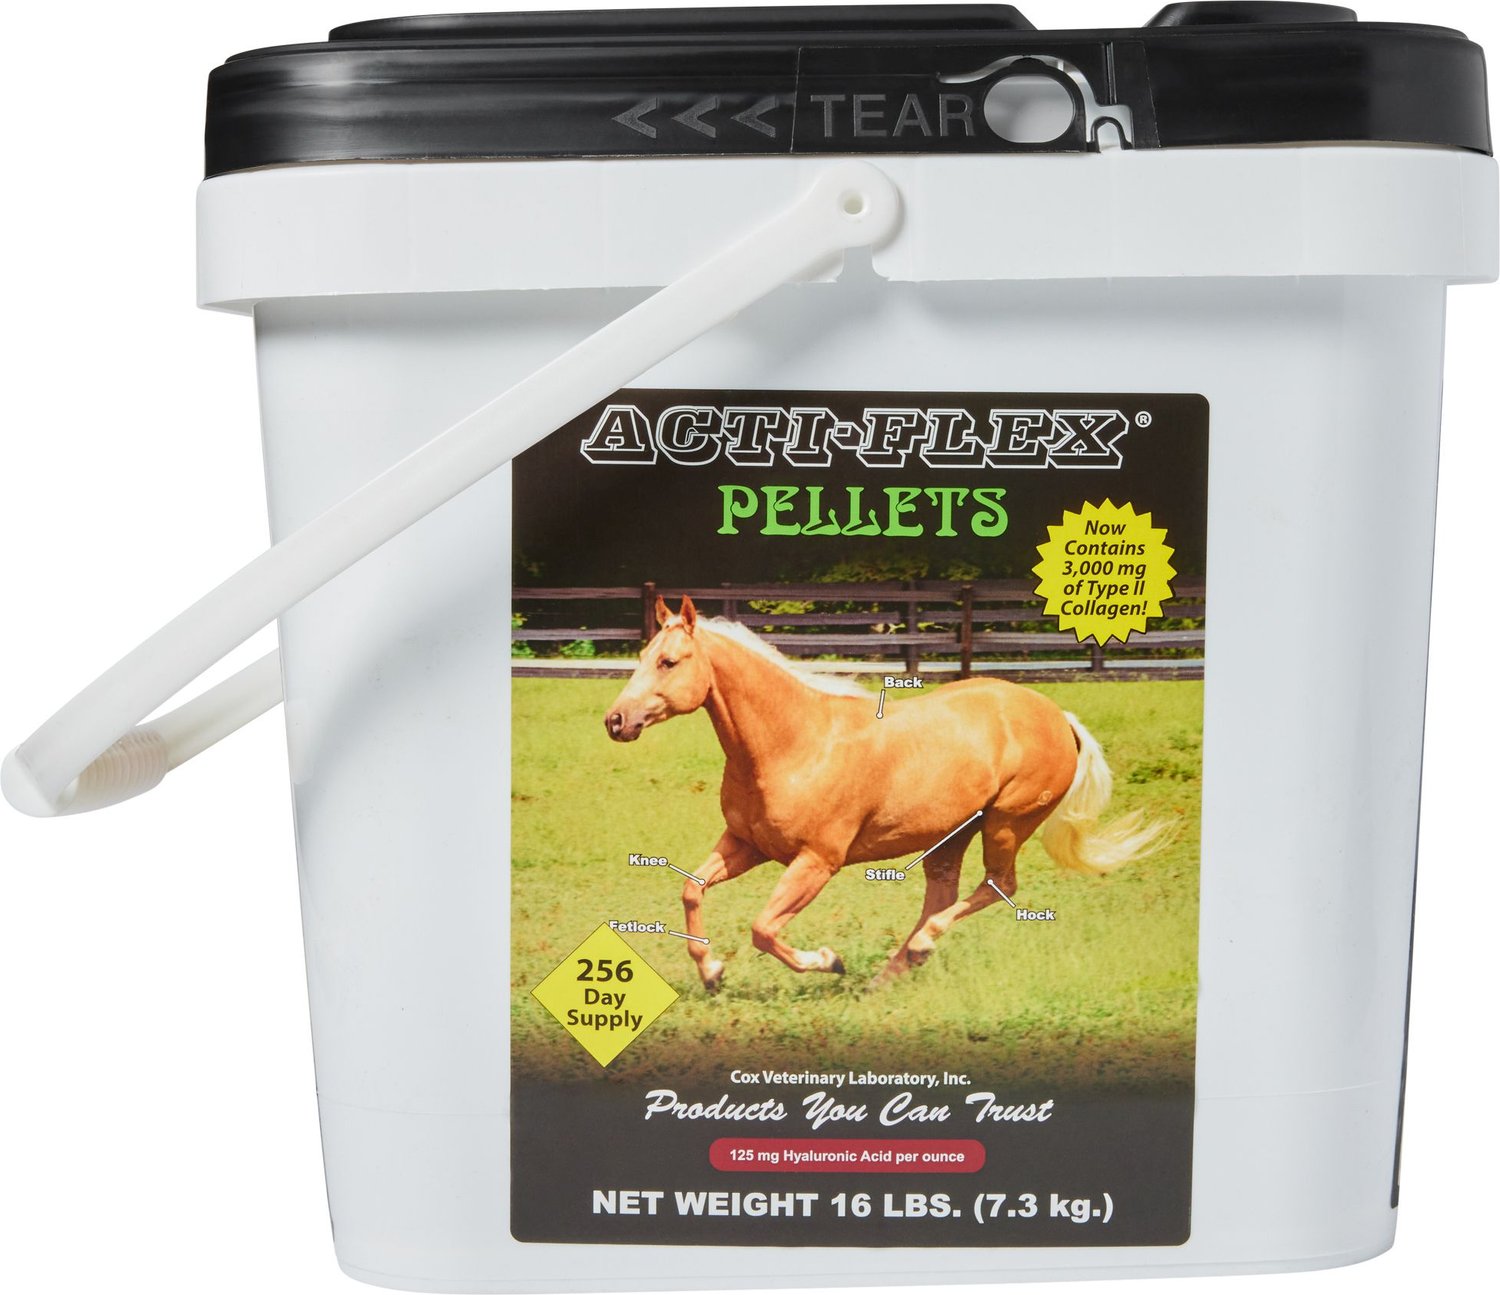 Horse supplement